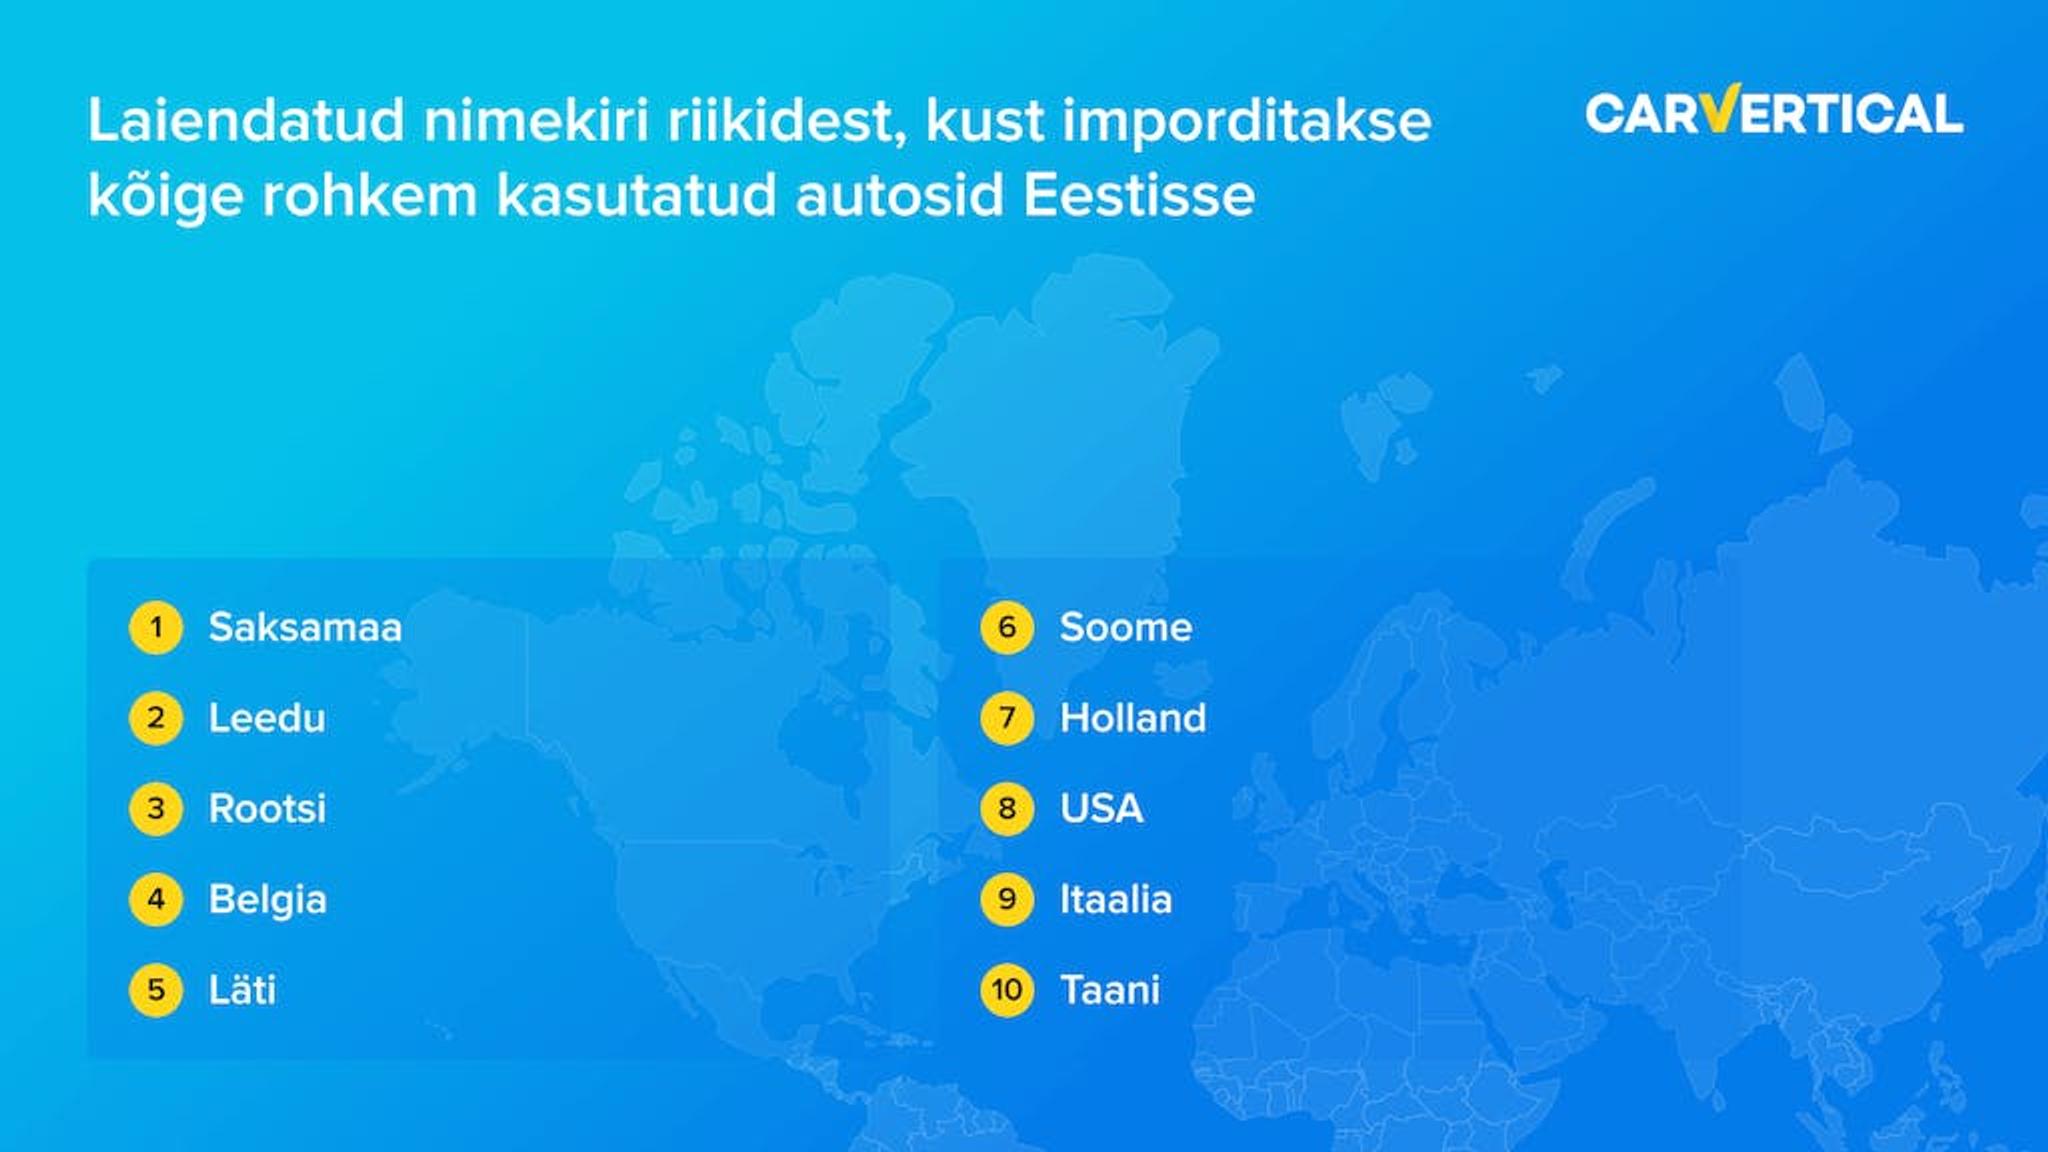 Laiendatud nimekiri riikidest kust imporditakse koige rohkem kasutatud autosid Eestisse